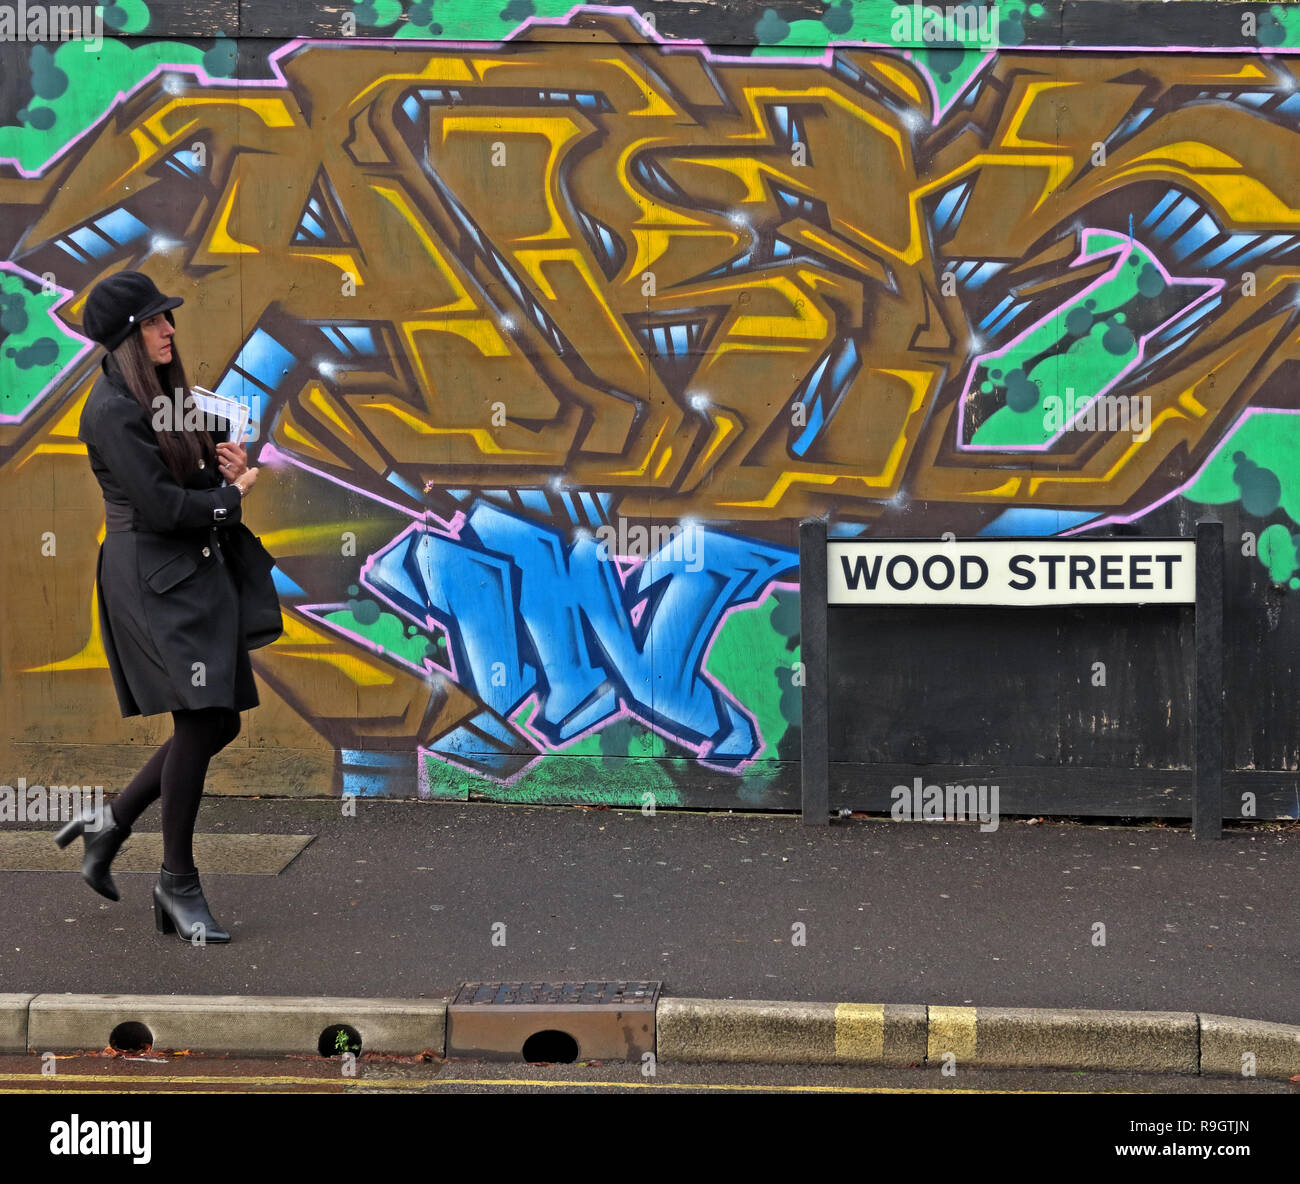 Woman in Black passé marche graffiti colorés, dans la rue du Bois, Taunton, Somerset, Angleterre du Sud-Ouest, Royaume-Uni, TA1 1UN Banque D'Images